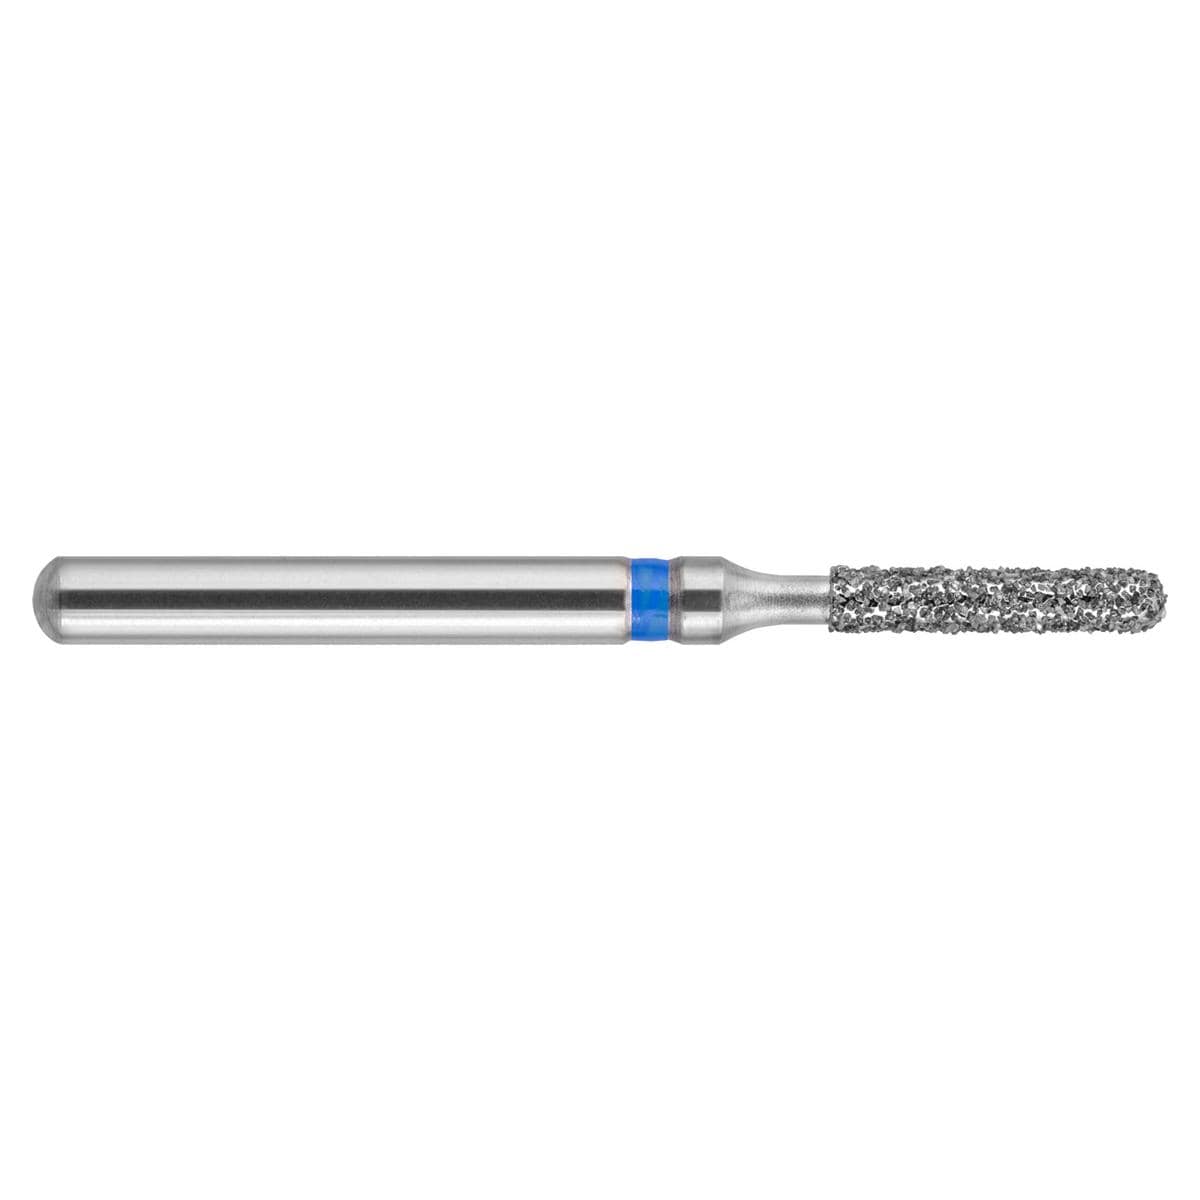 NeoDiamond FG, Form 140, Zylinder rund, kurz - ISO 010, mittel (blau), kurz, Packung 10 Stück